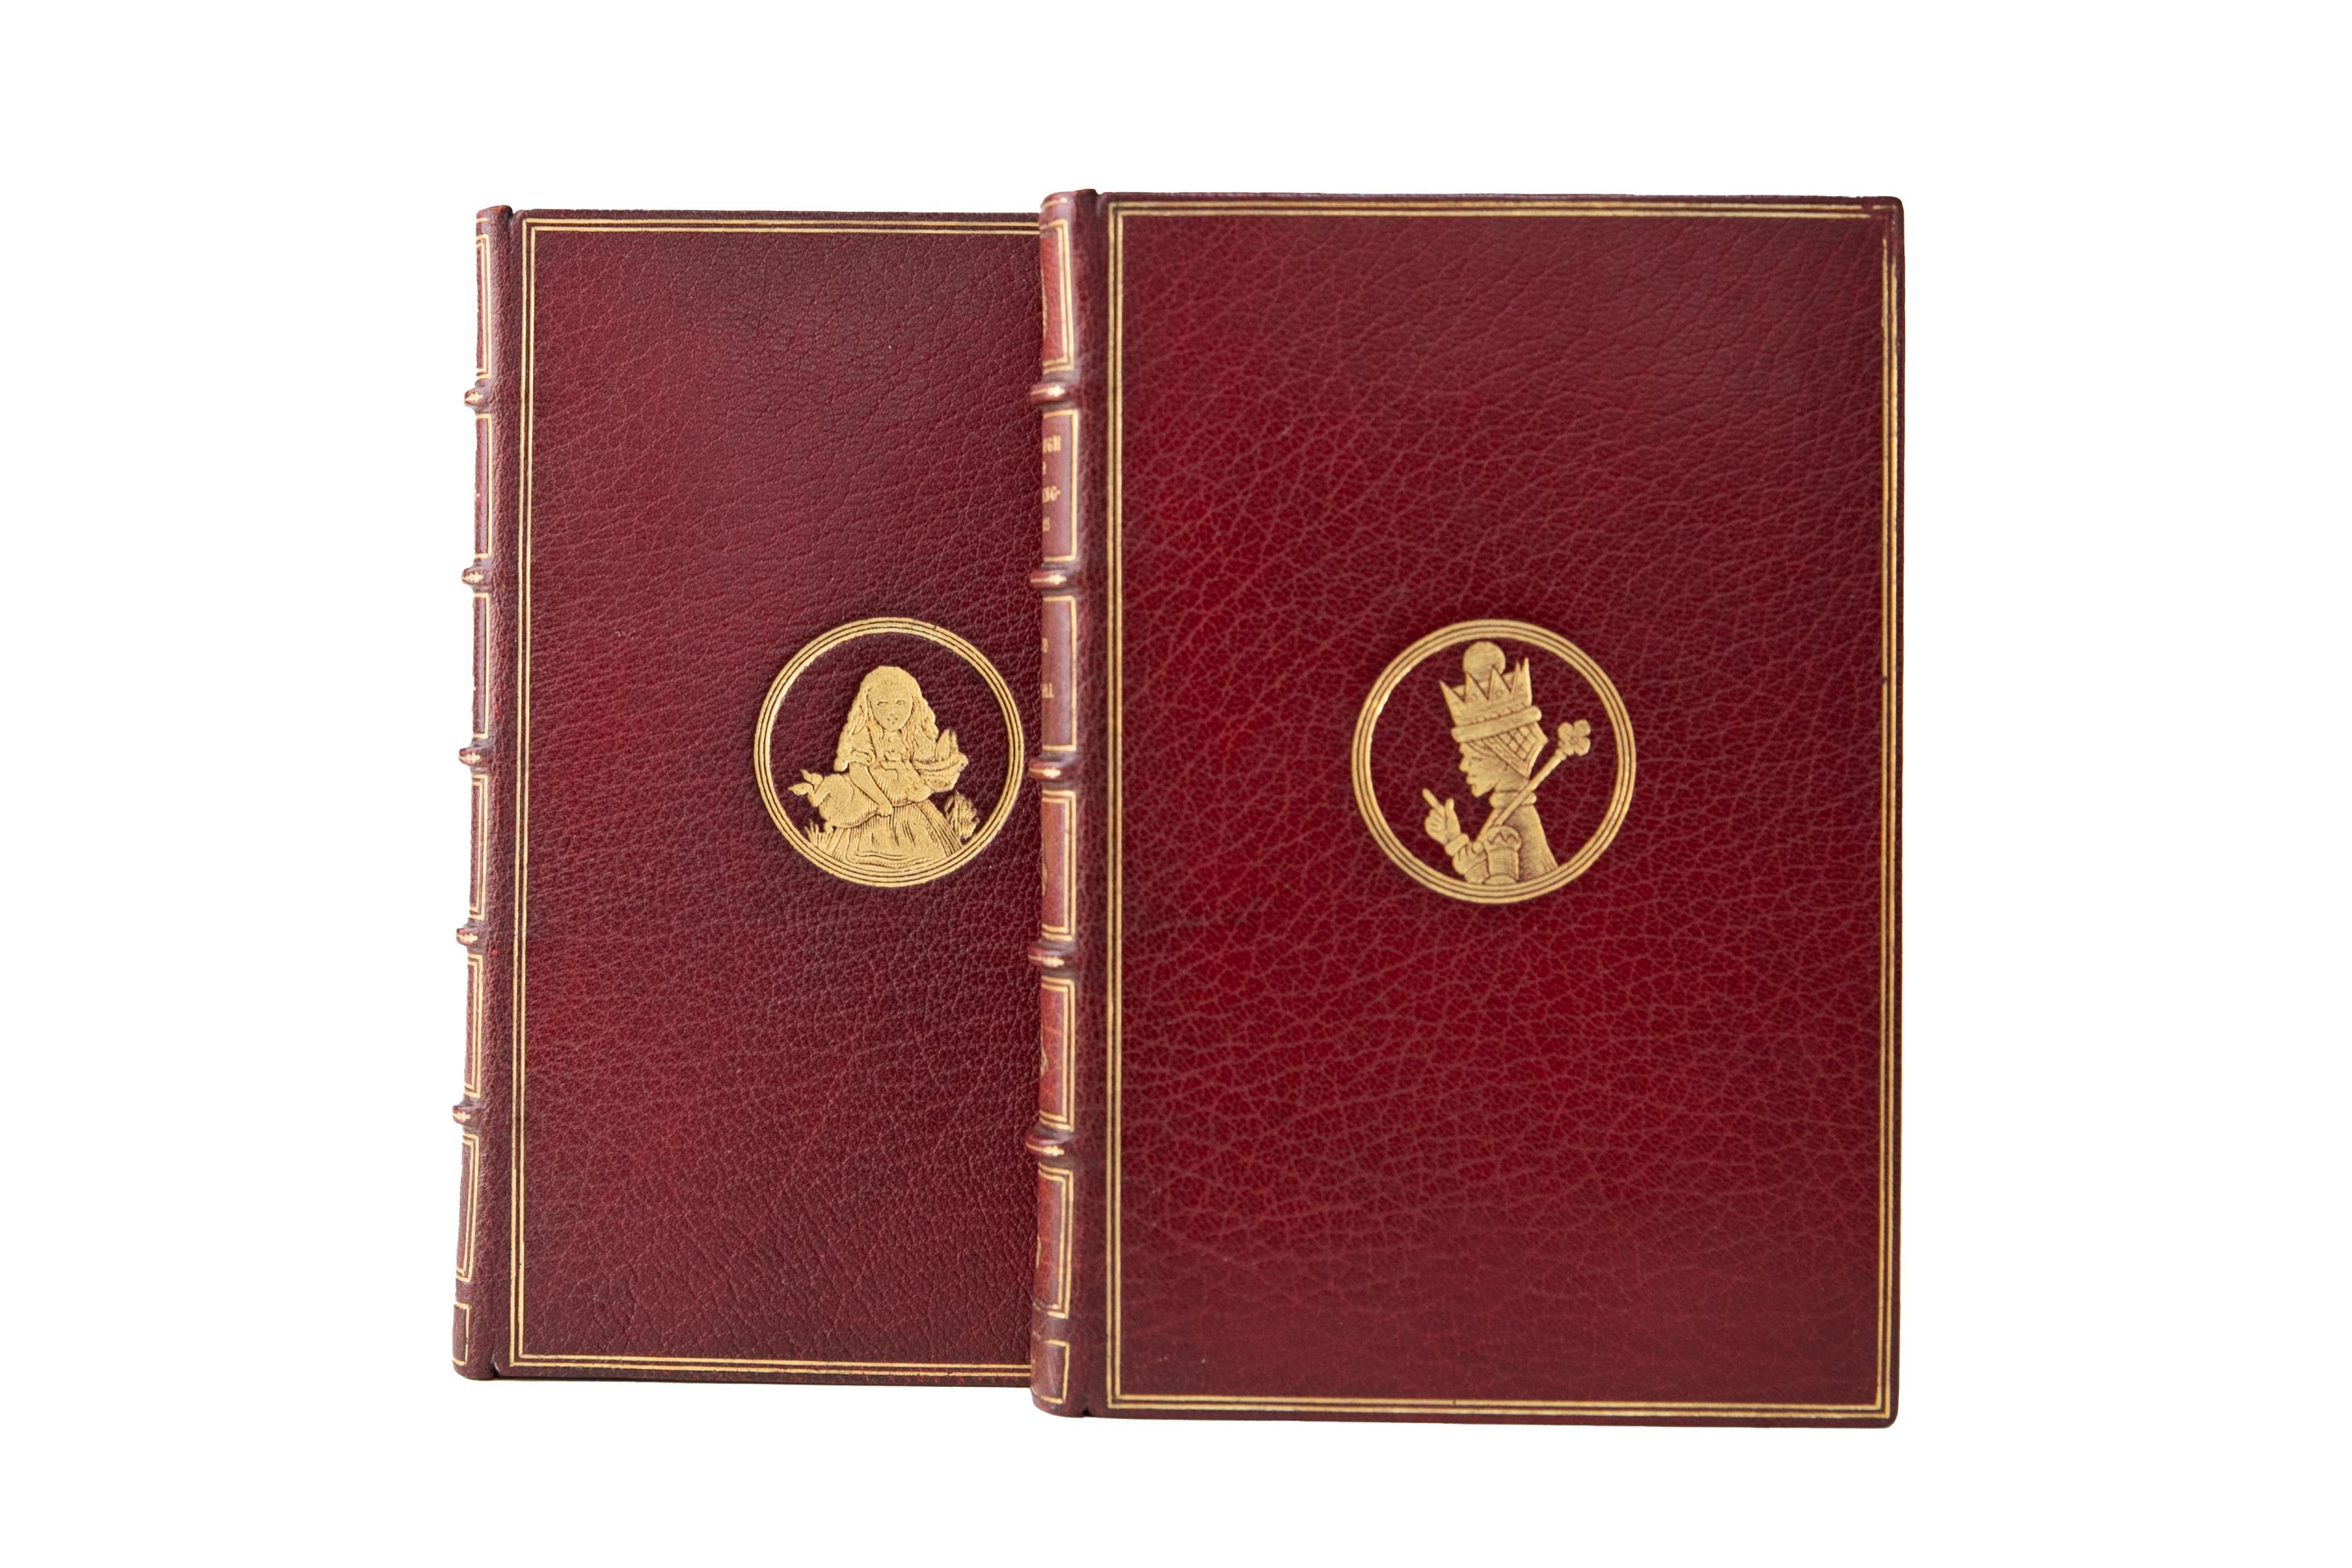 2 Volumes. Lewis Carroll, Les Aventures d'Alice au pays des merveilles et De l'autre côté du miroir. Relié par Sangorski & Sutcliffe en plein maroquin rouge avec les couvertures et les dos à bandes en relief dorés. Toutes les tranches sont dorées,